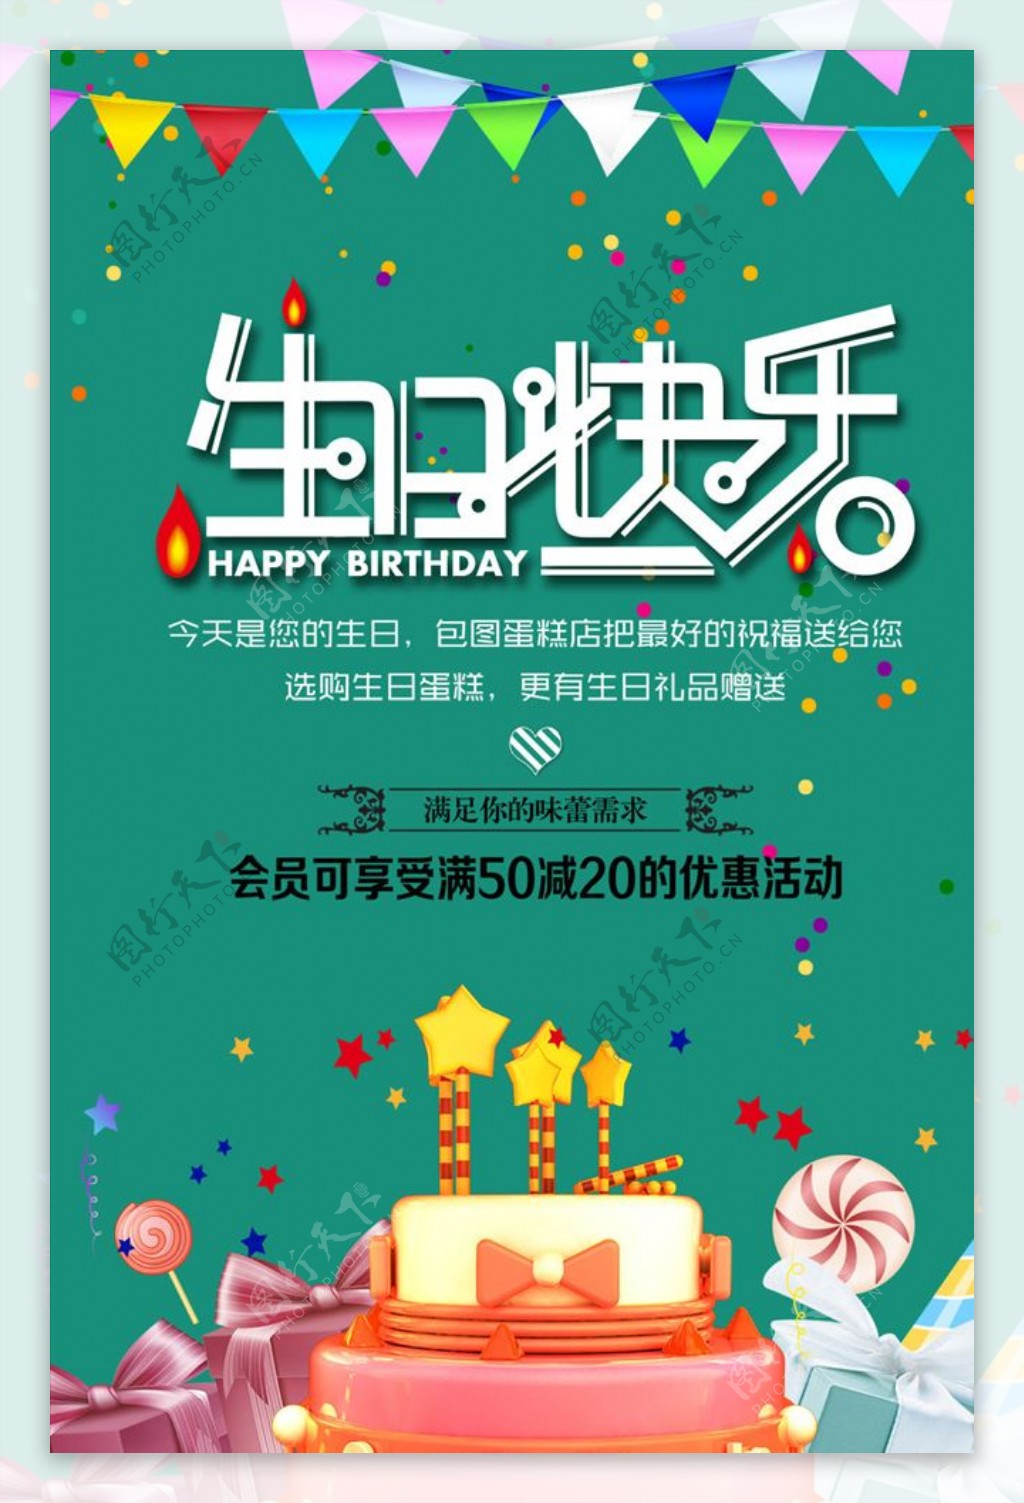 生日快乐蛋糕店促销海报